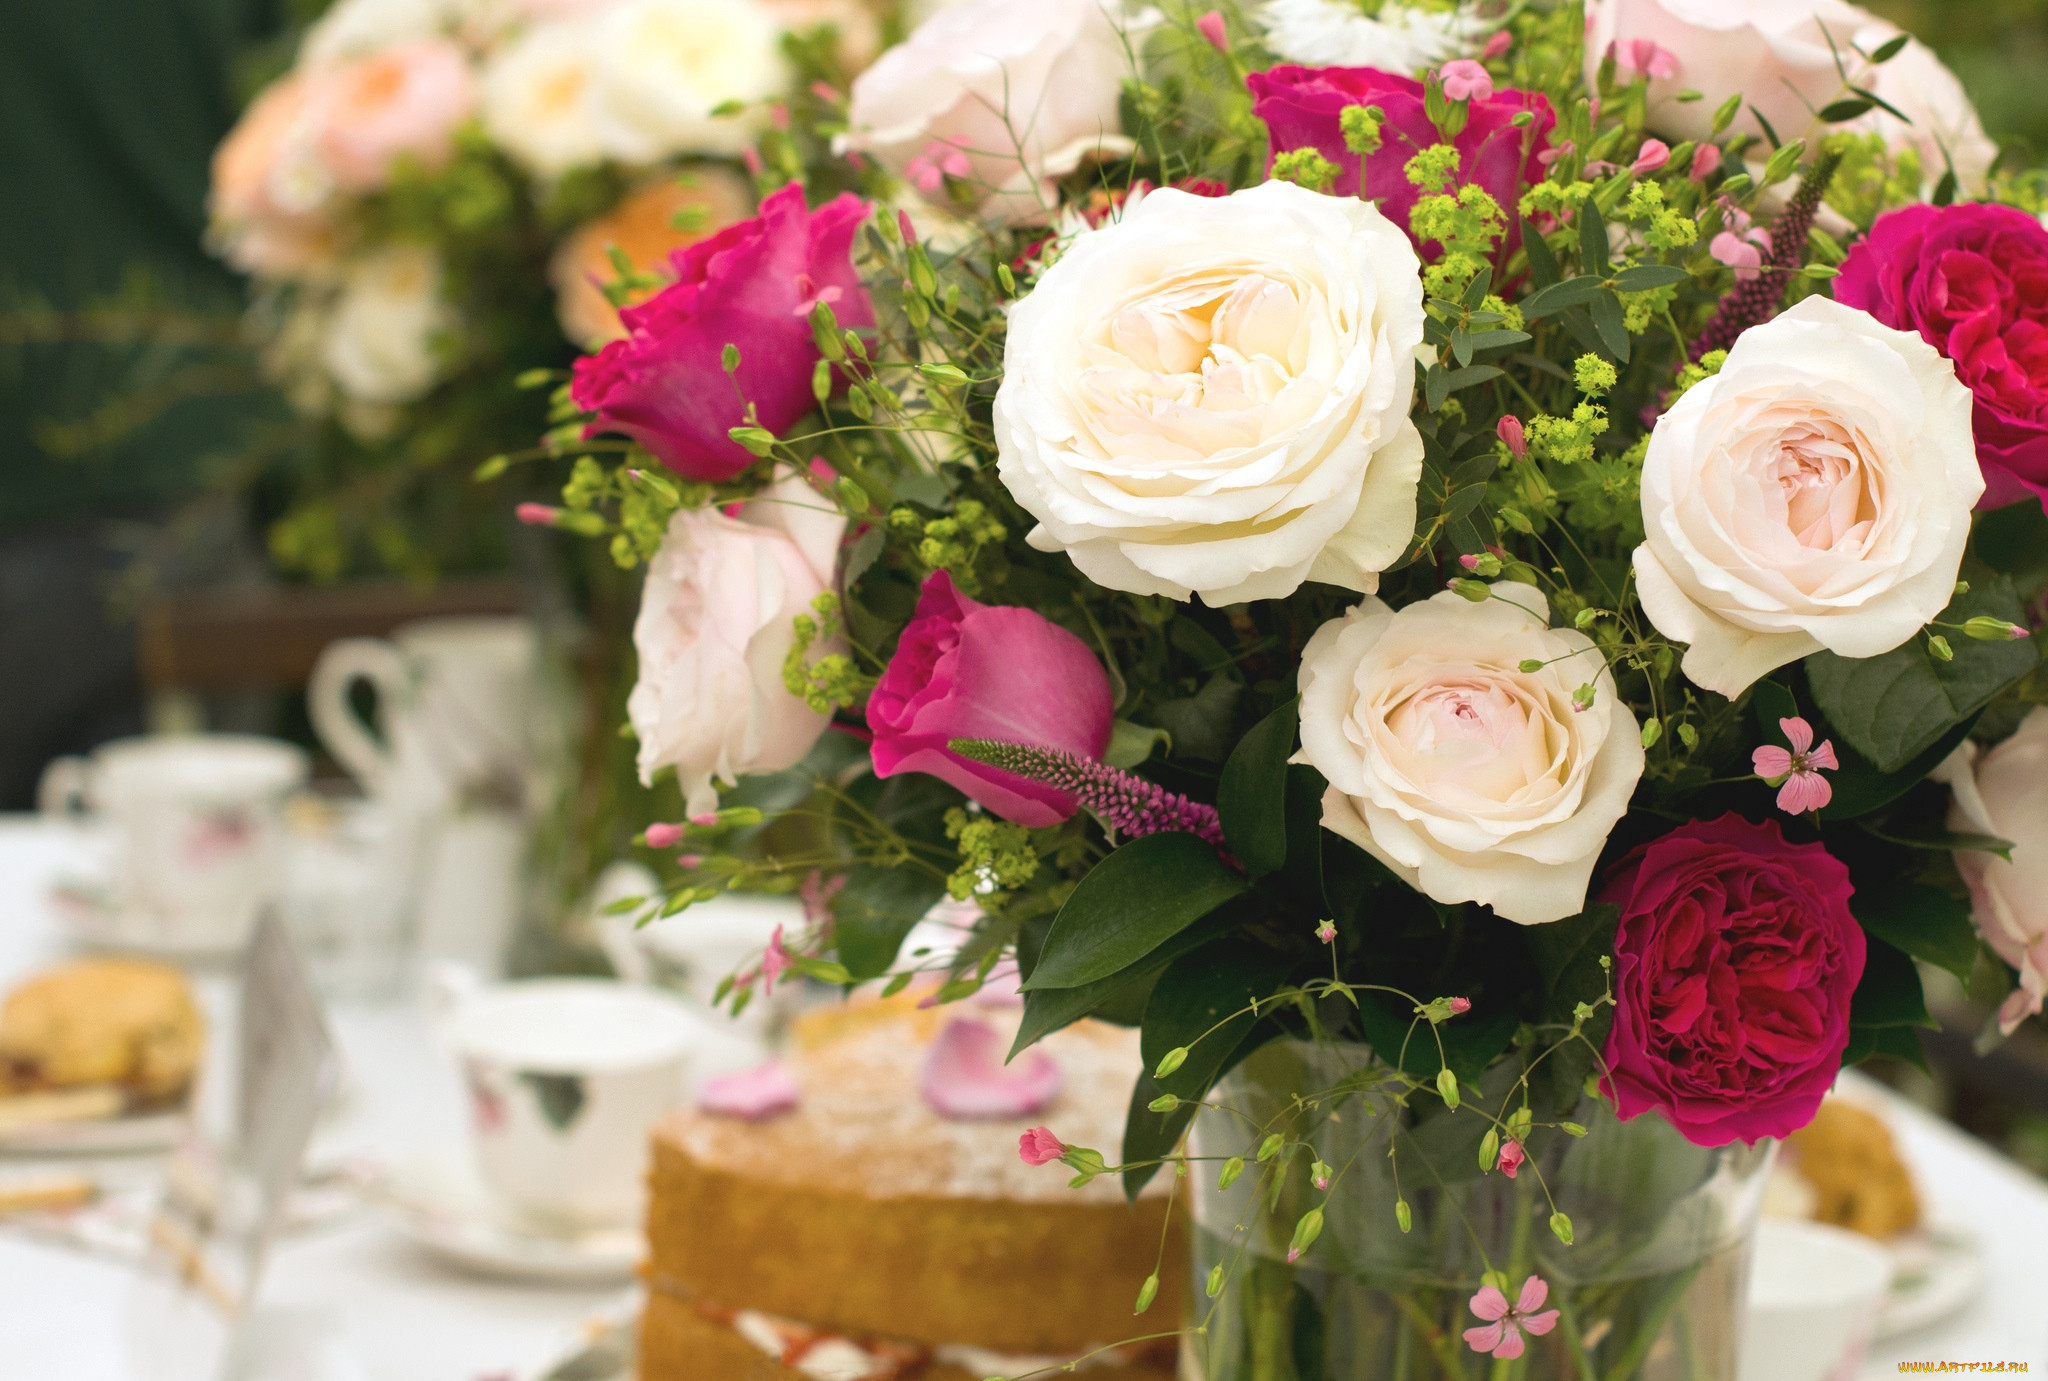 Много цветов на столе. Красивый букет на столе. Композиция роз. Красивый букет цветов с днем рождения. Букет роз на столе.